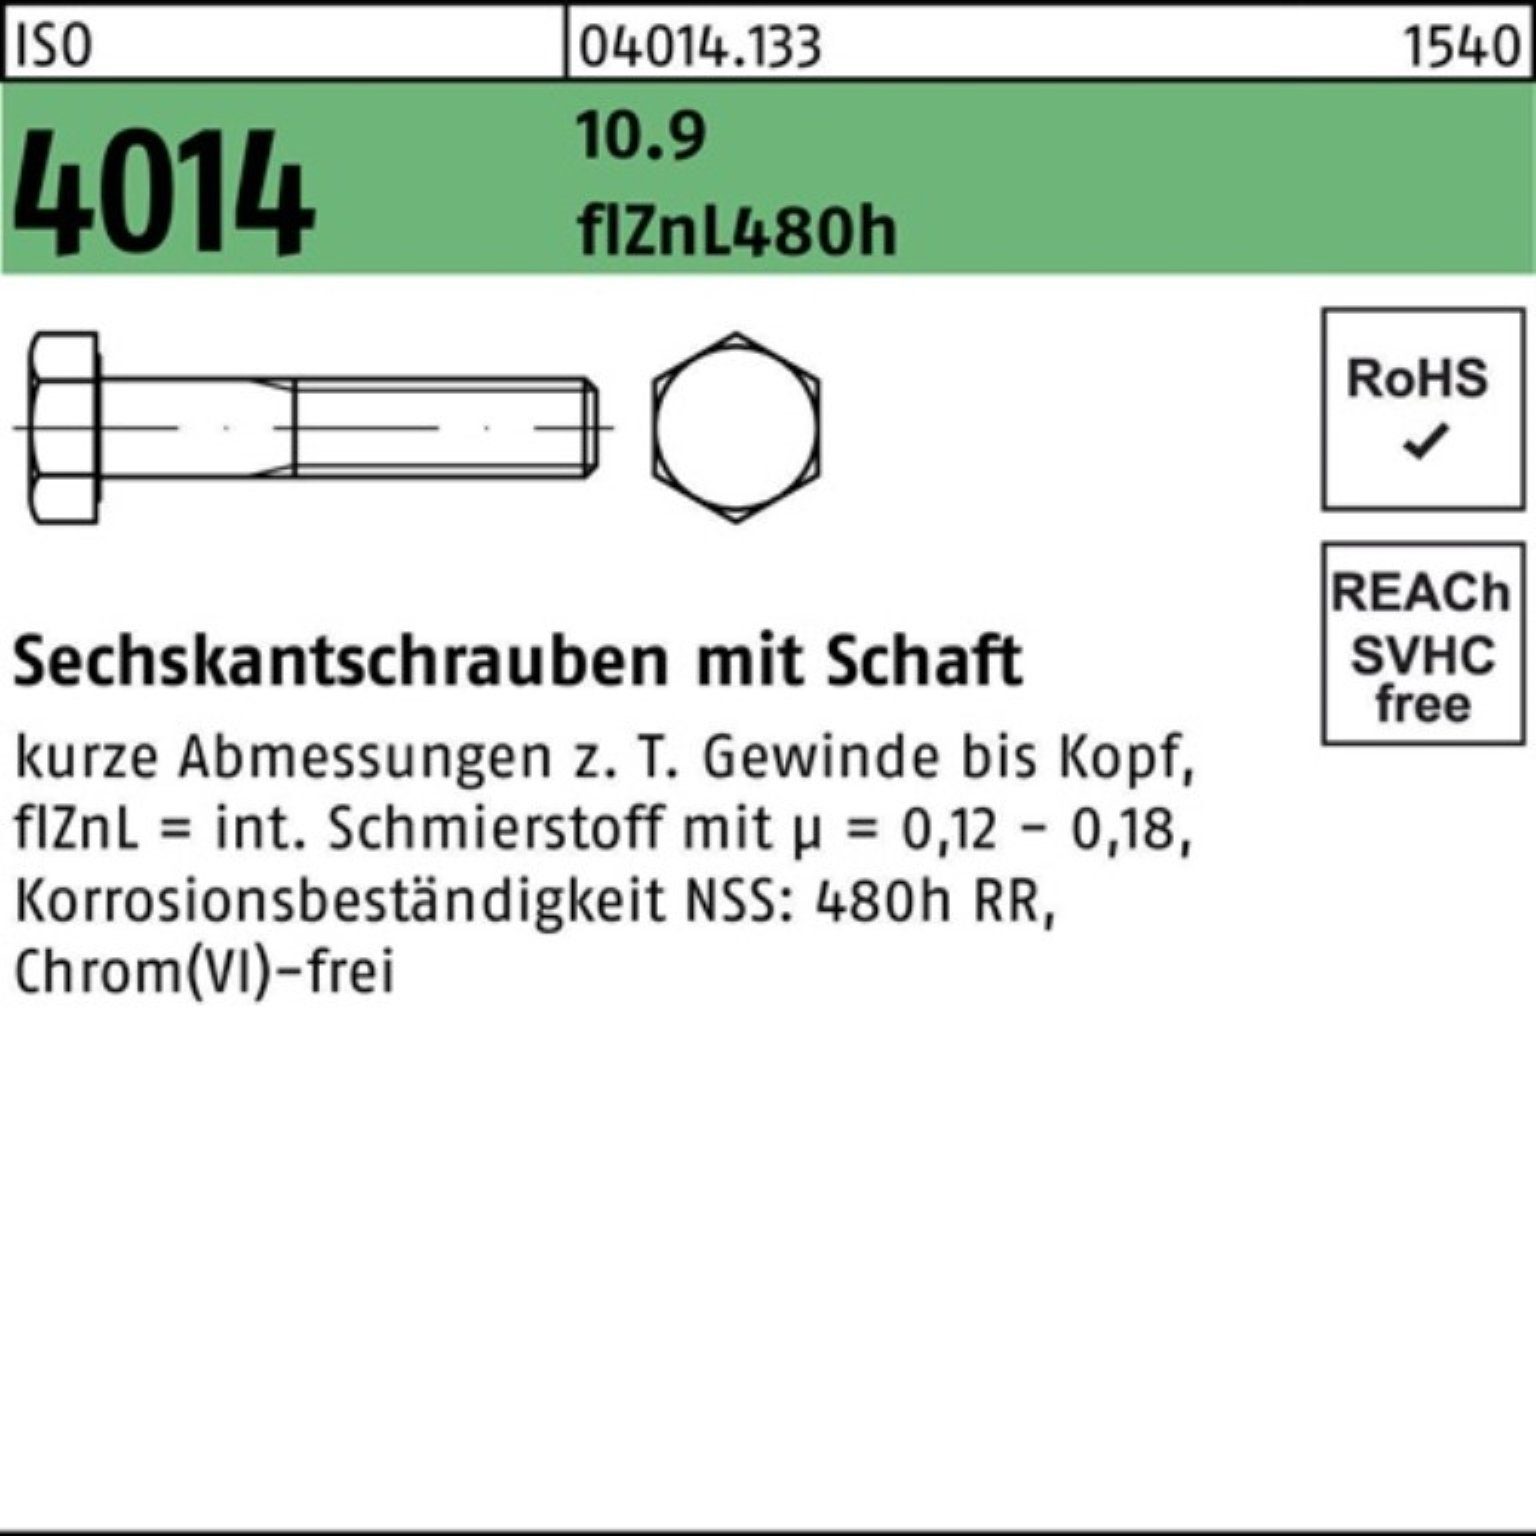 100er Sechskantschraube Bufab 10.9 4014 M22x Schaft Sechskantschraube Pack zinklamelle ISO 110